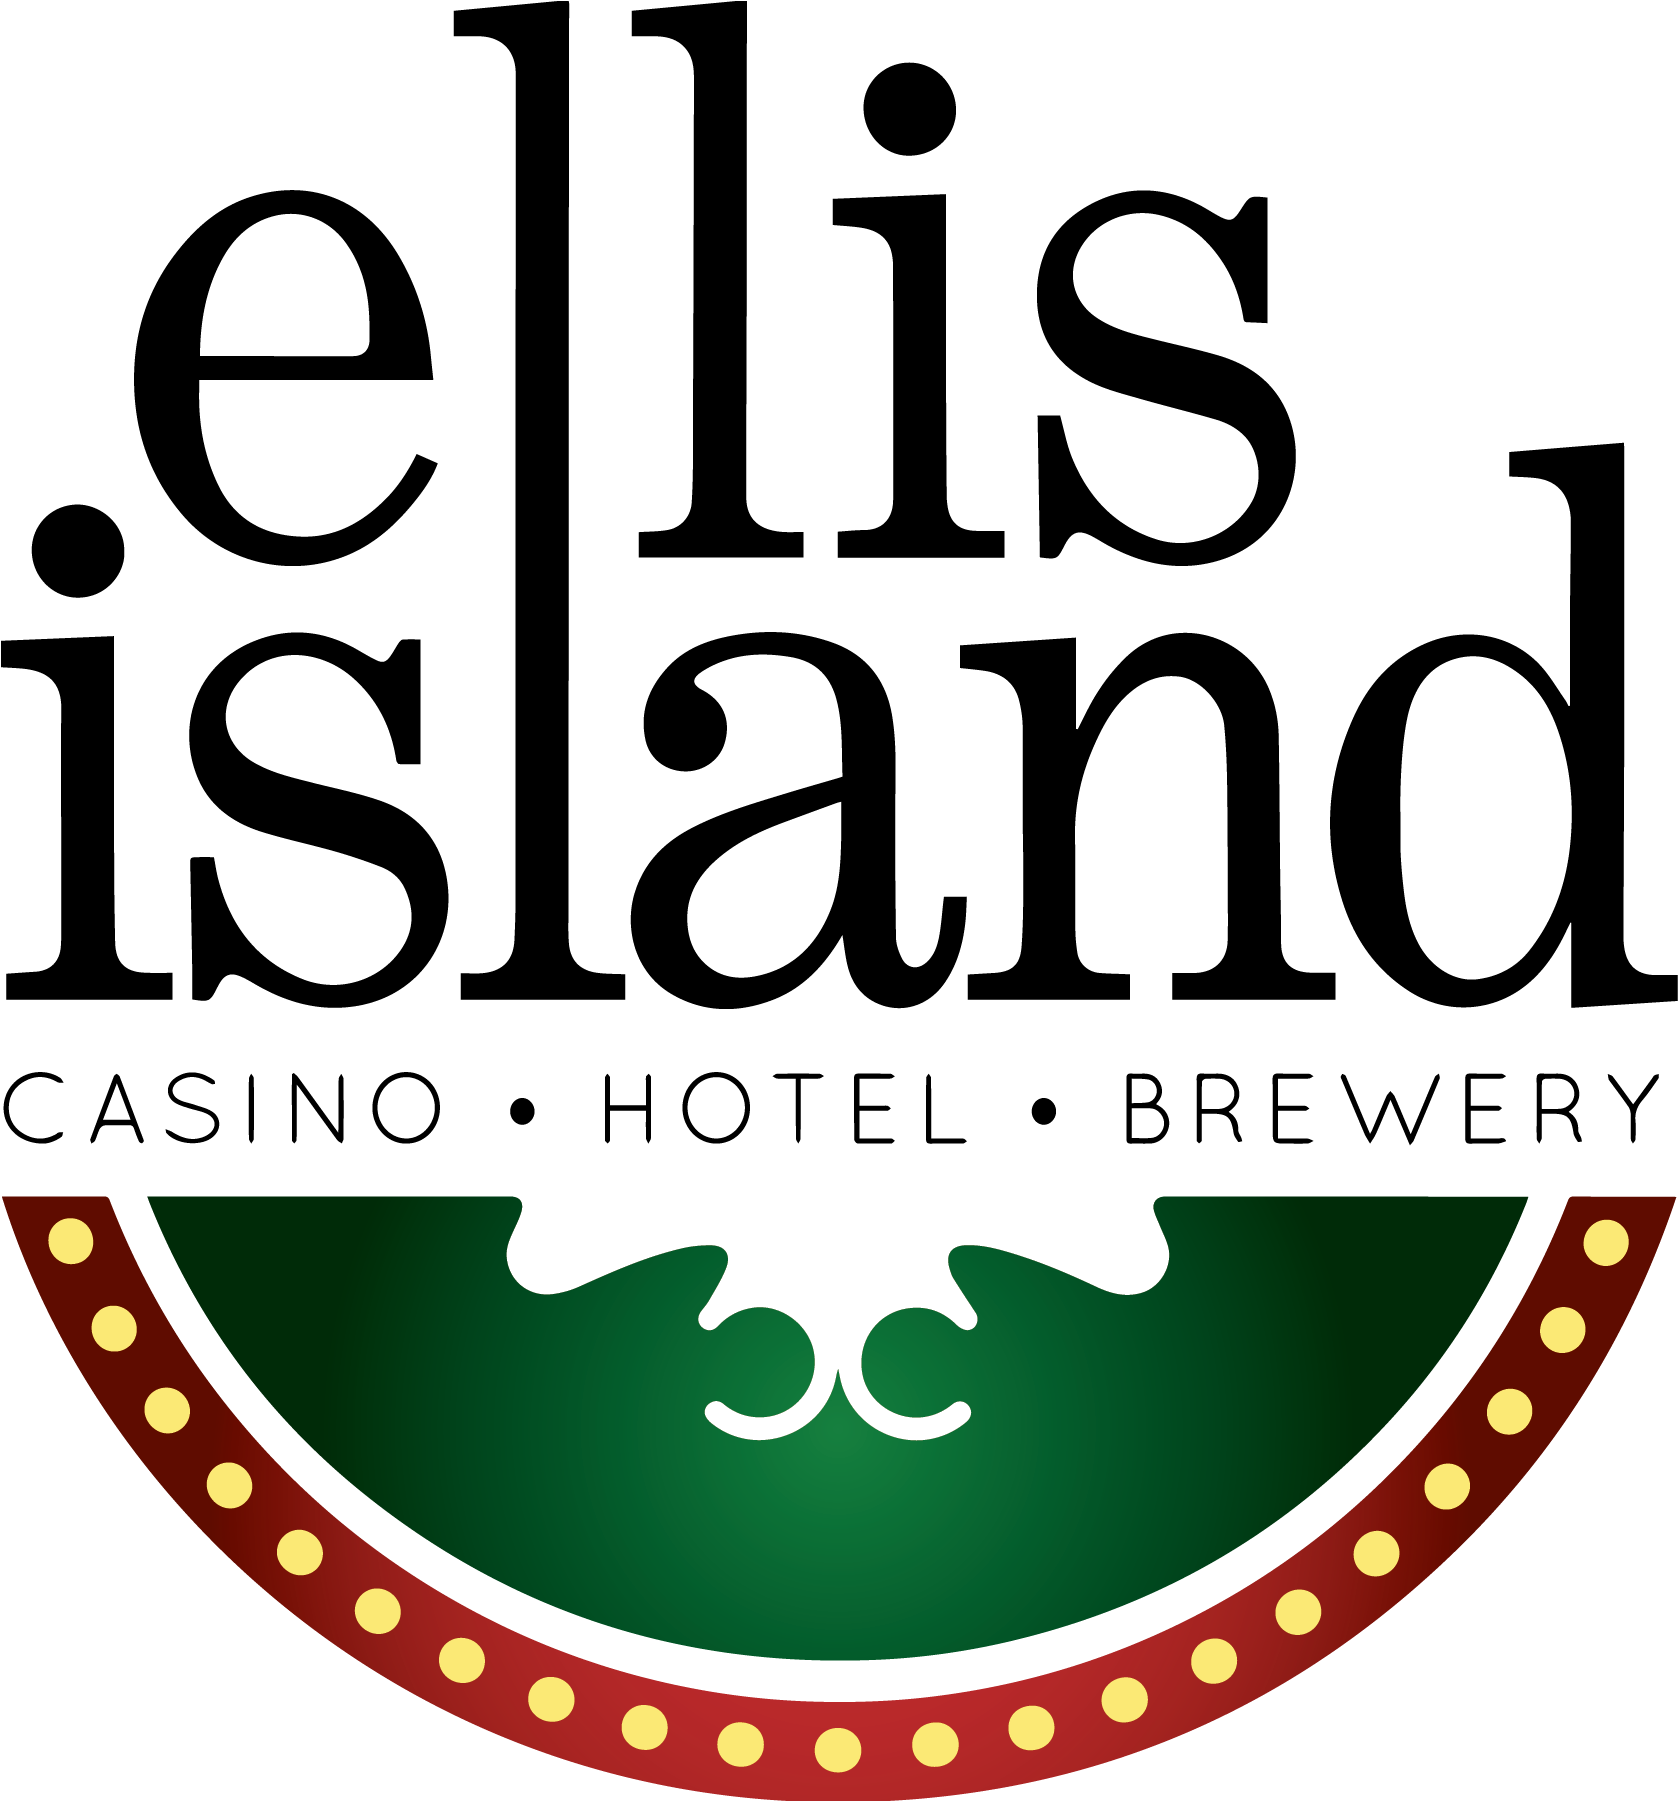 Ellis Island Casino Logo Clipart (1800x1800), Png Download